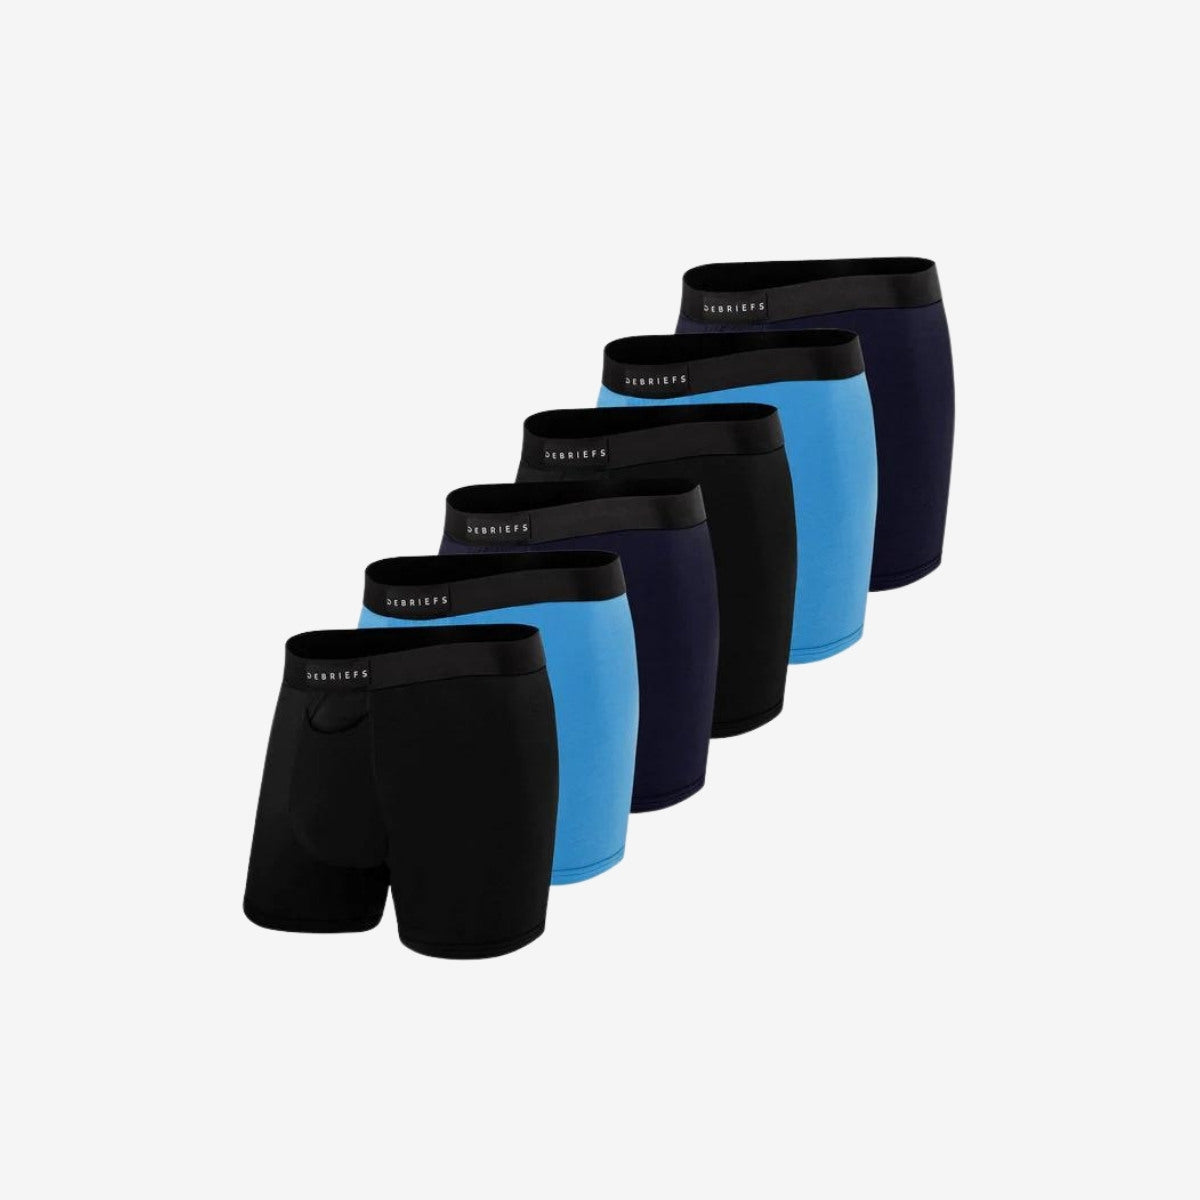 Mens Boxer Briefs Underwear Online 6 pack - Black Blue Navy